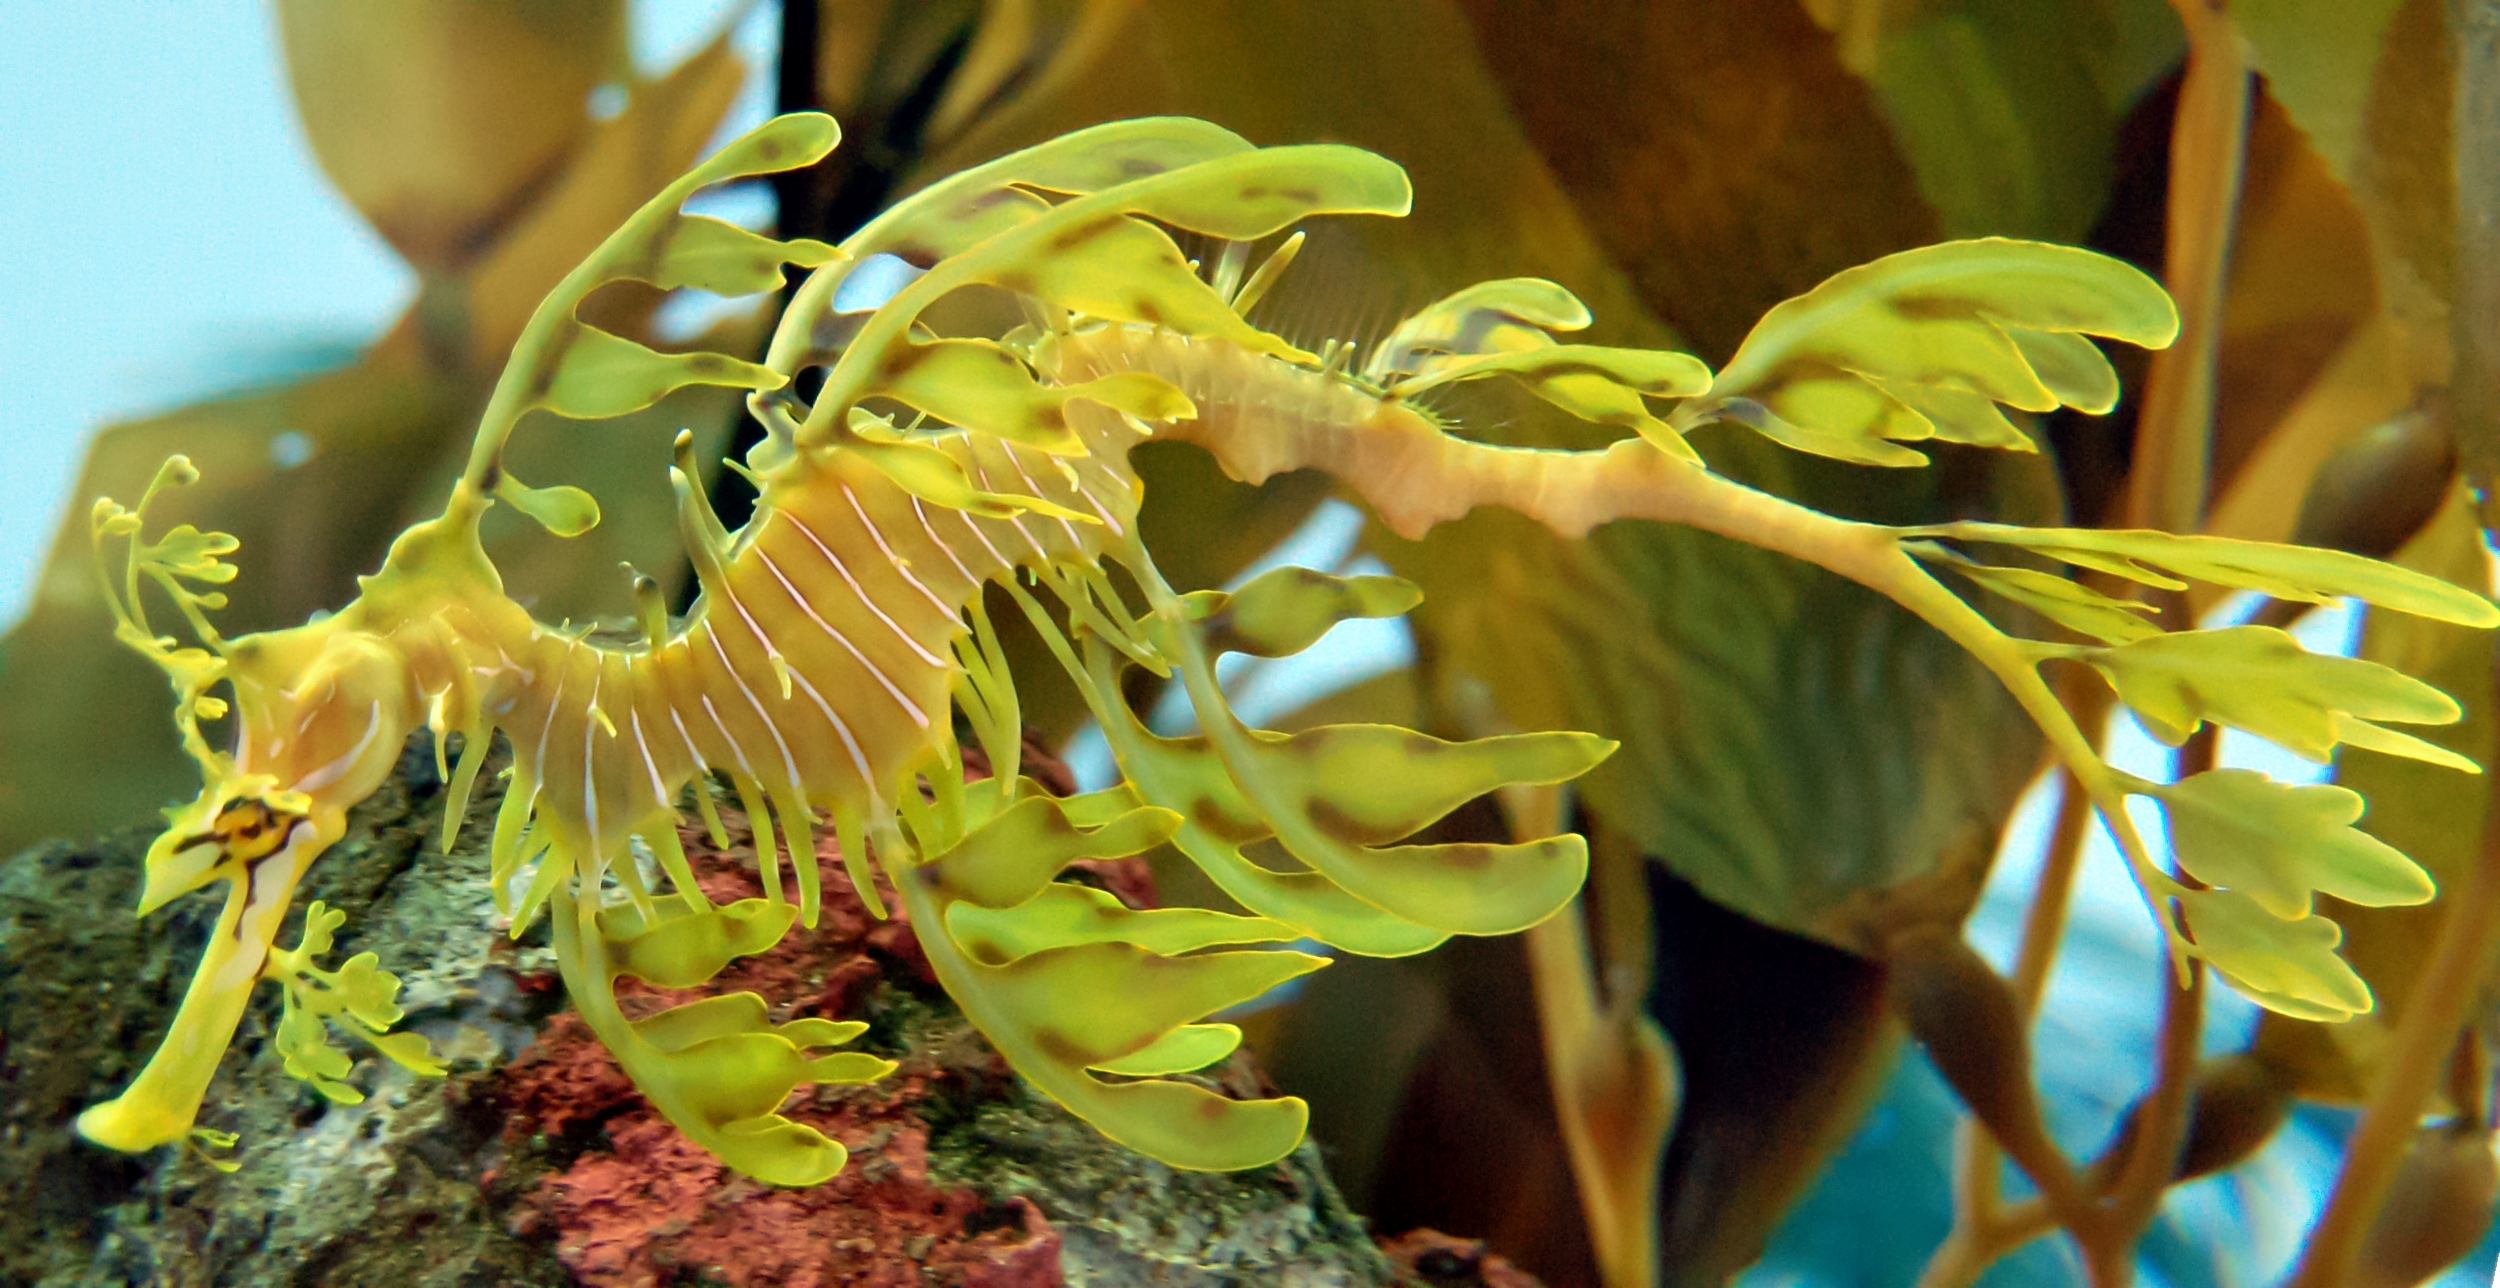 Seaweed Seahorse